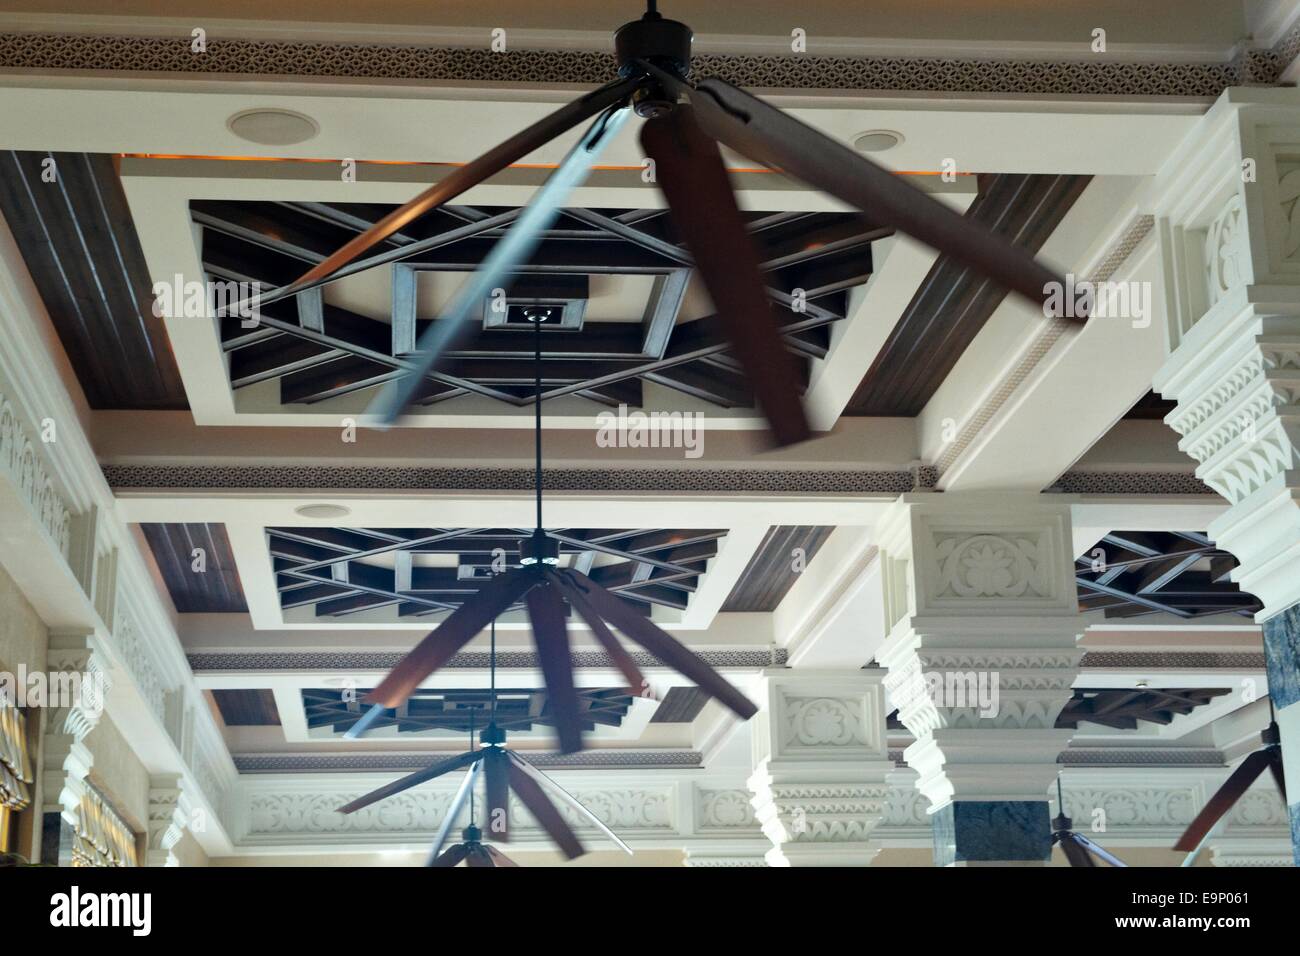 Indoor restaurant ceiling fans at Hotel Al Qasr, Dubai, UAE Stock Photo -  Alamy